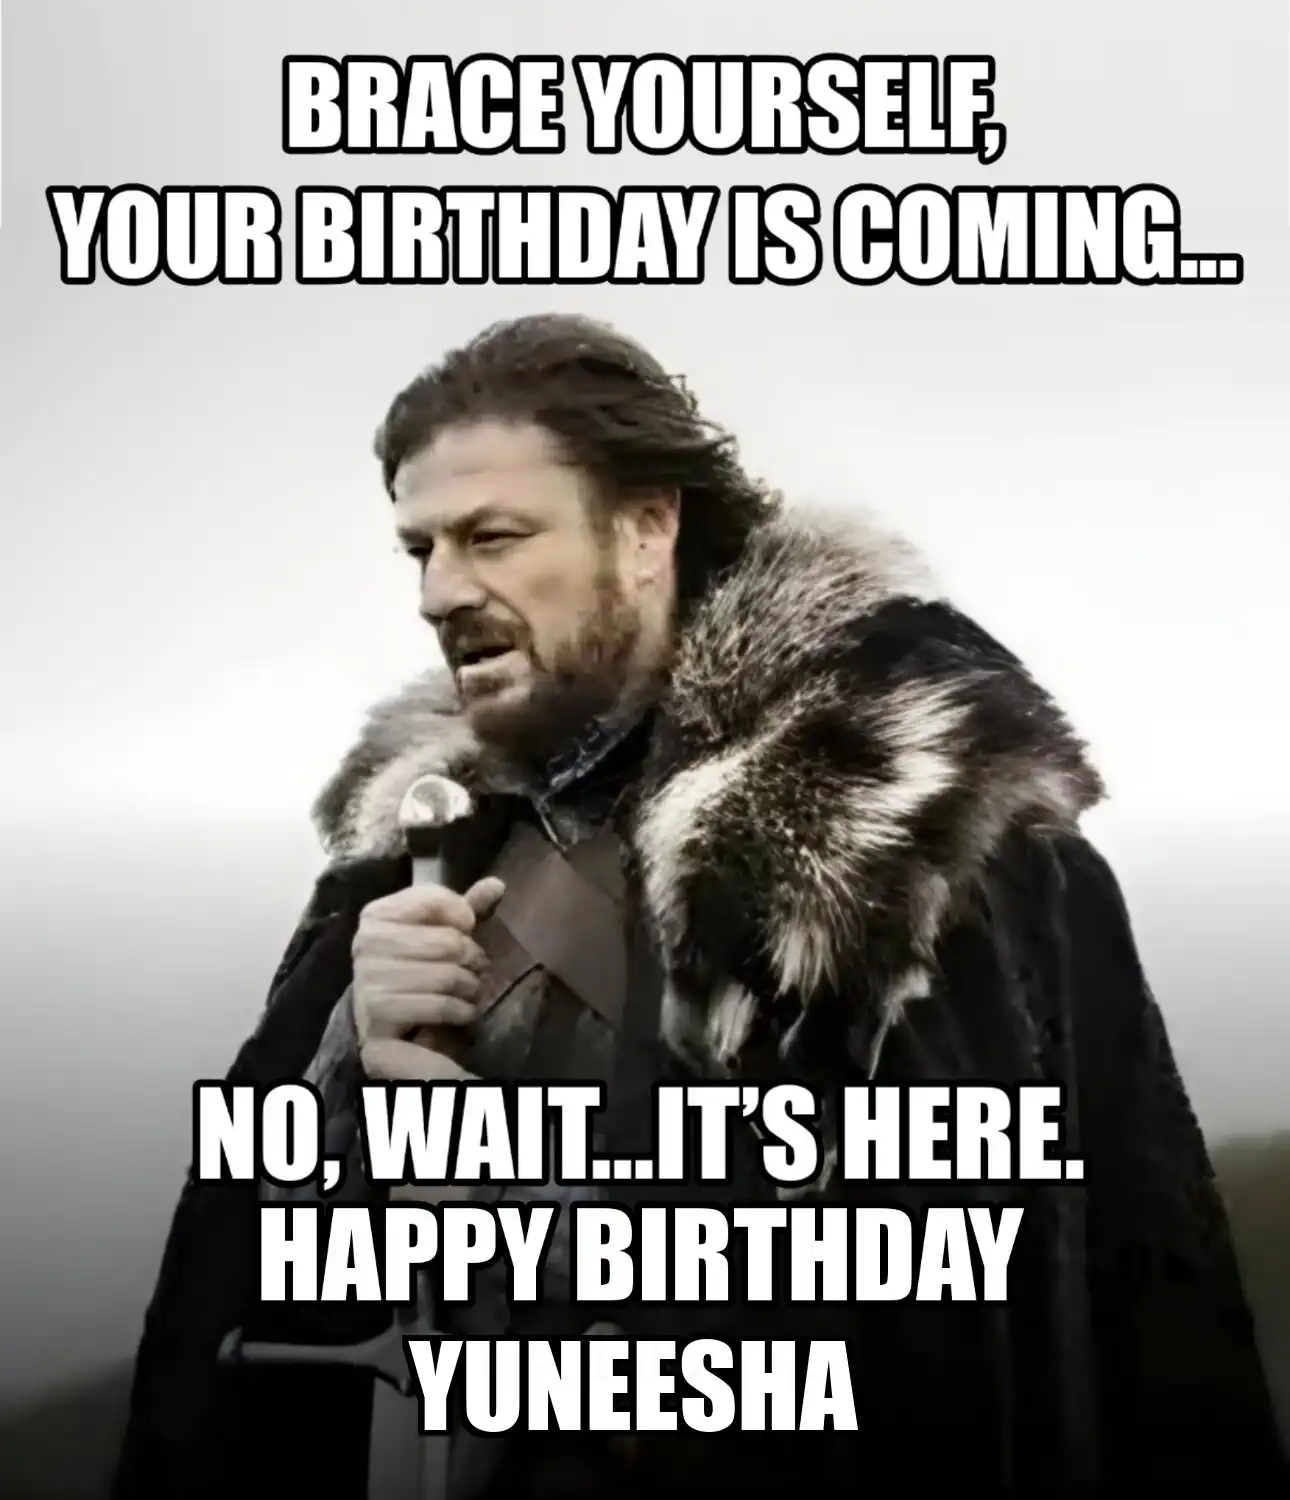 Happy Birthday Yuneesha Brace Yourself Your Birthday Is Coming Meme